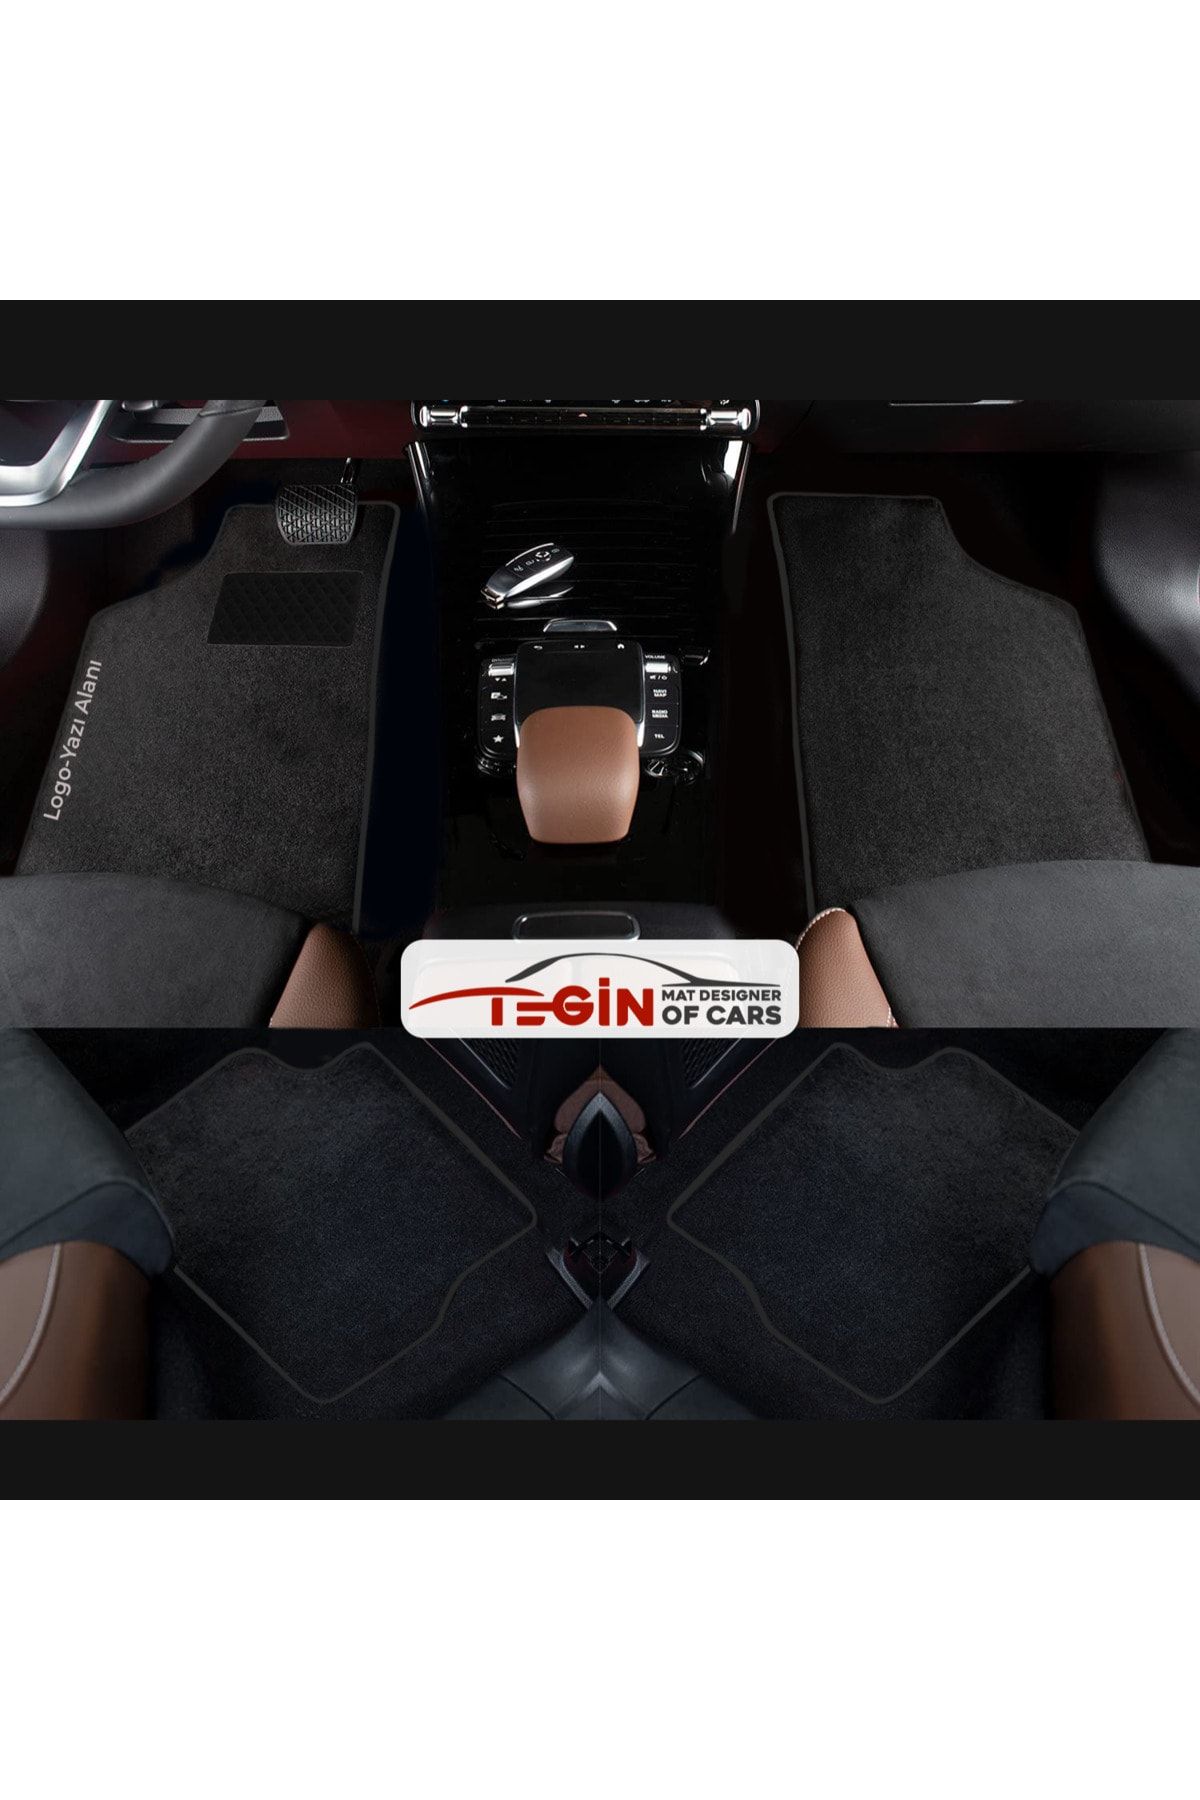 Tegin Mat Designer Of Cars Volkwagen Golf 7 Aracınıza Özel Prime Siyah Halı Siyah Kenar Halı Paspas